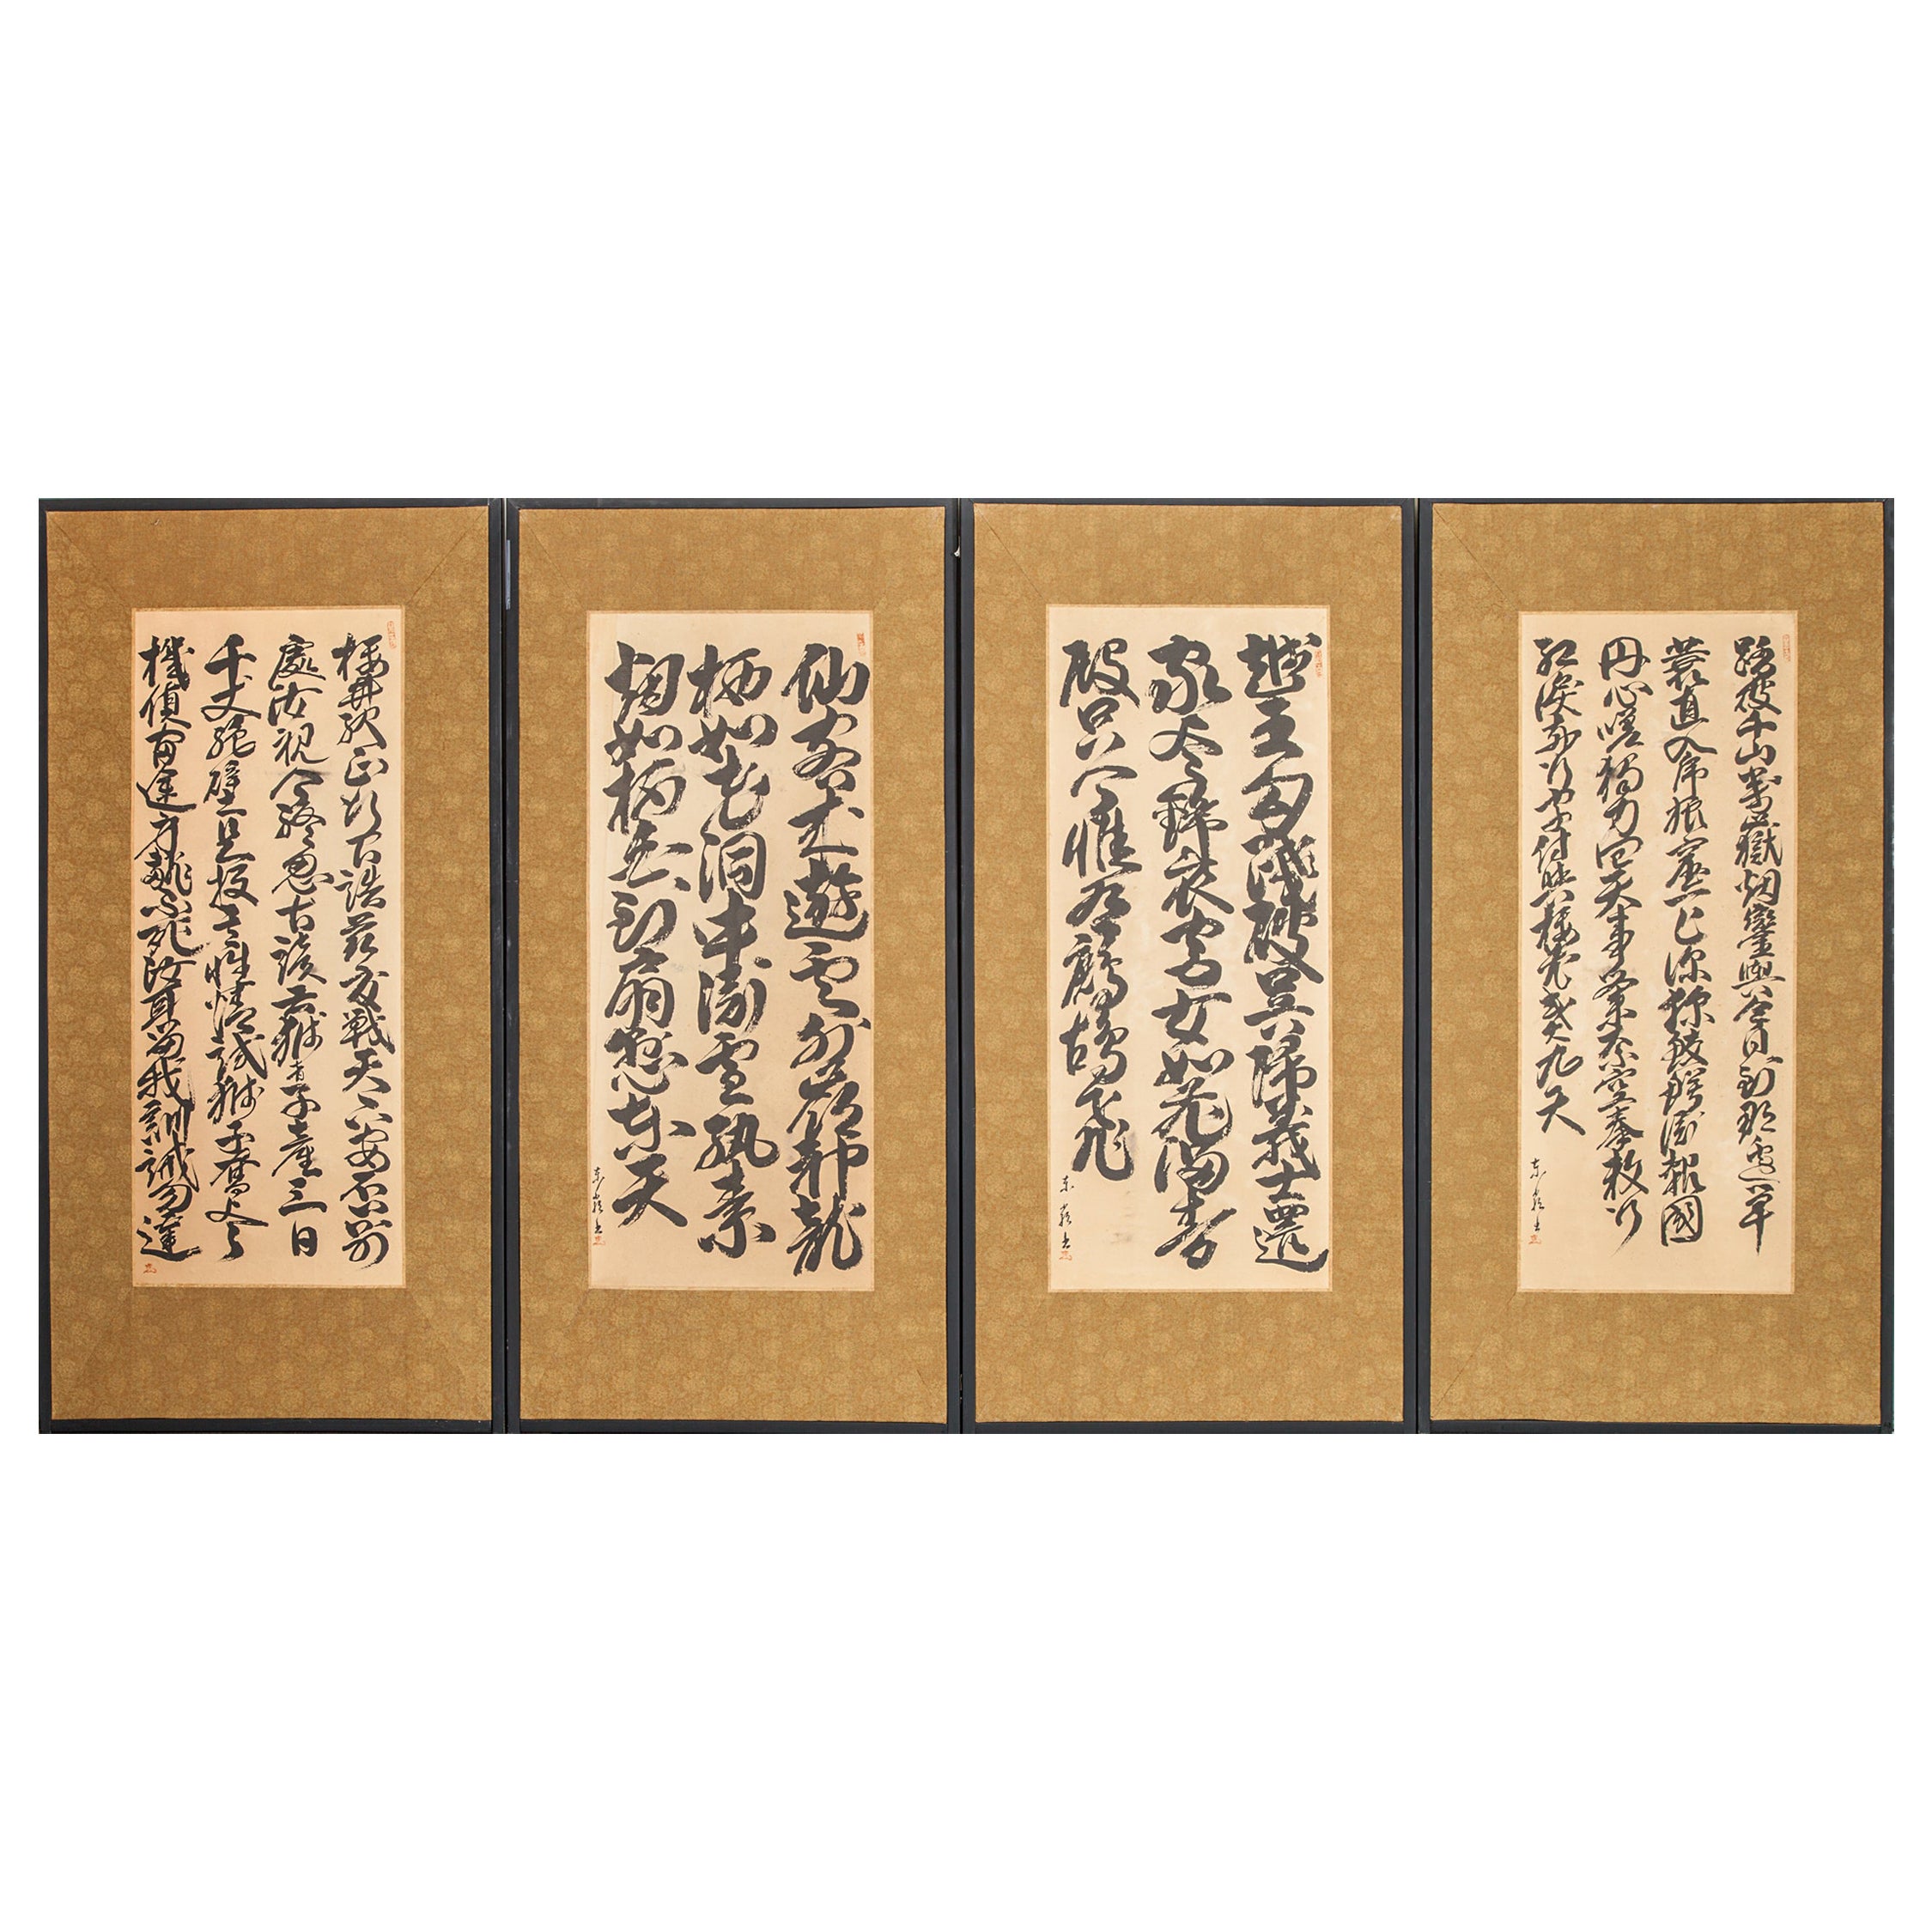 Japanischer Raumteiler mit vier Tafeln: Jahreszeitenpoemen